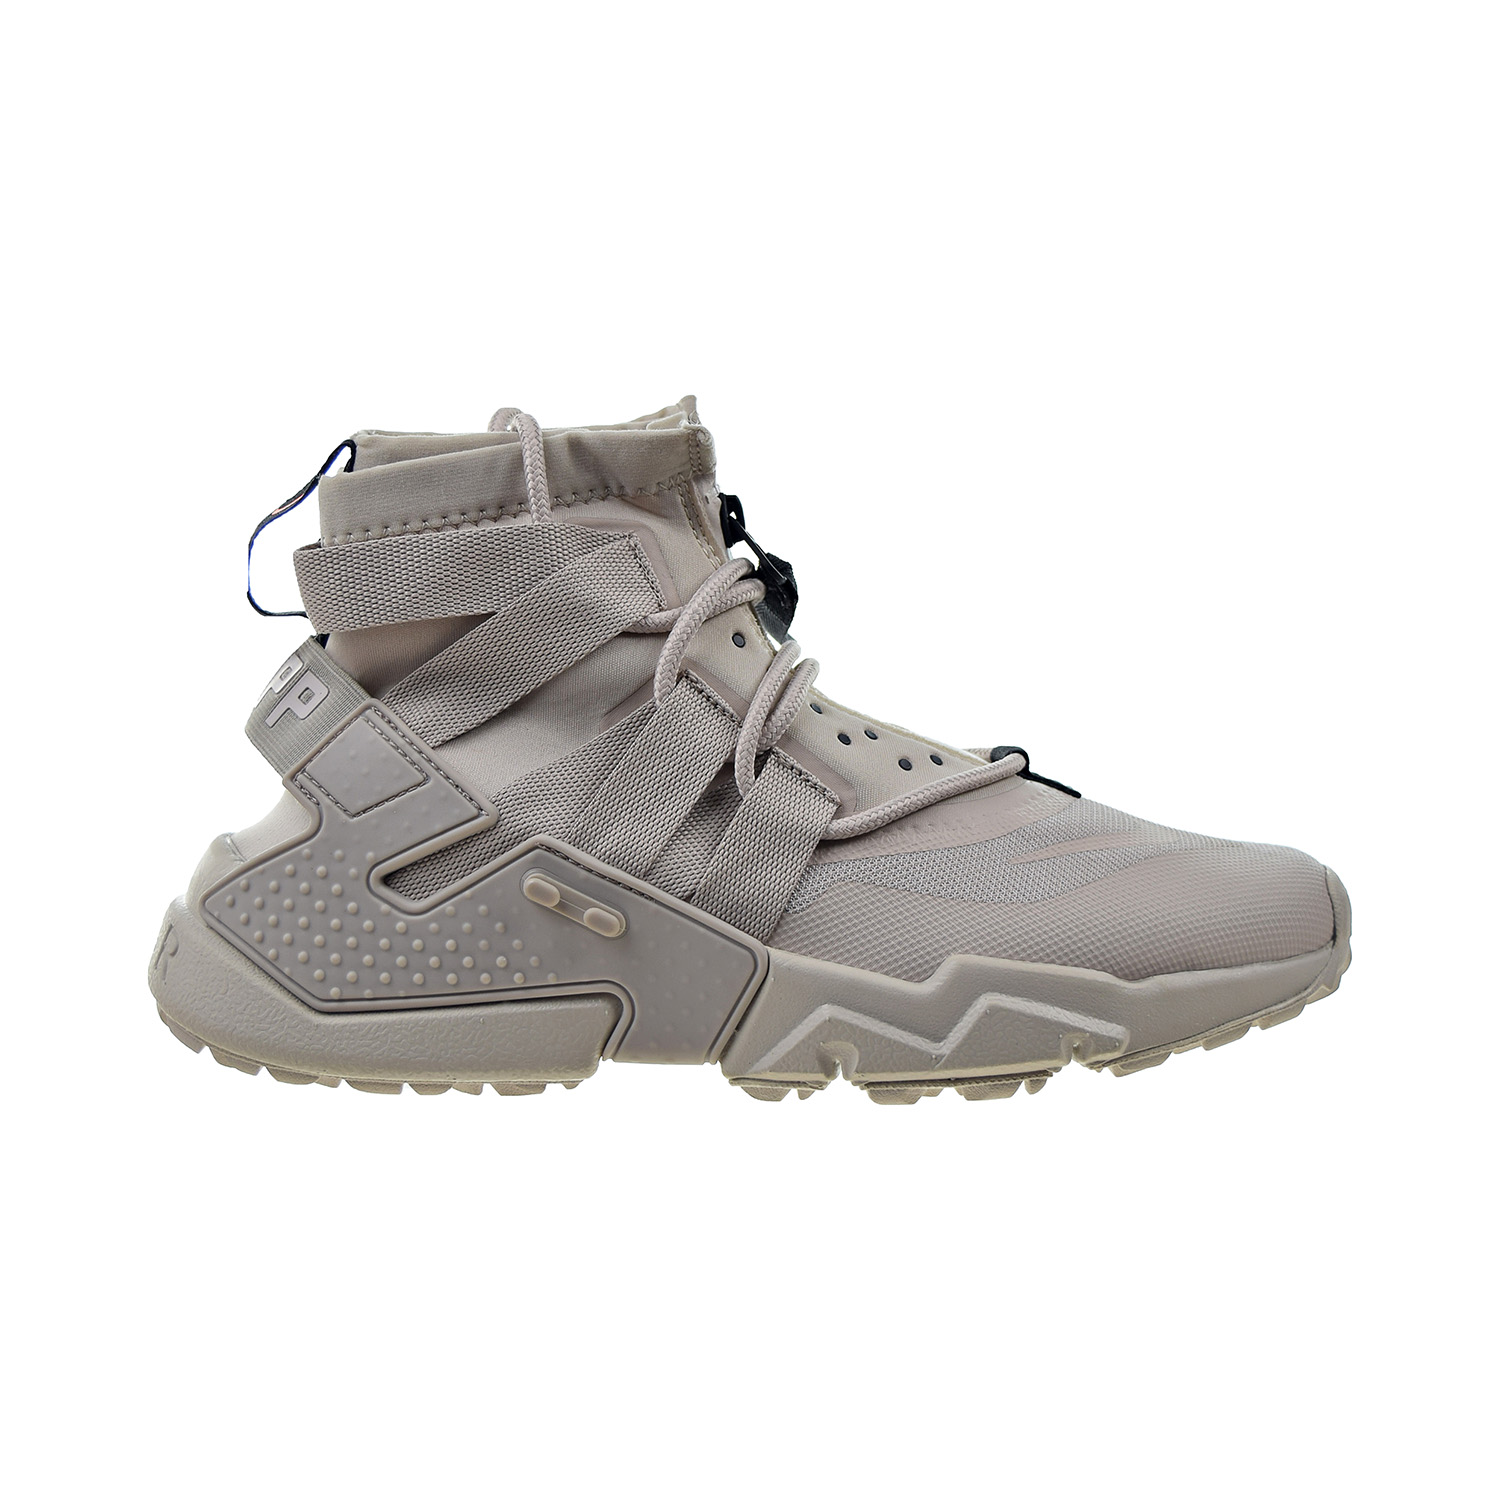 Nike Air Huarache Gripp Men's Shoes Desert Sand -String AO1730-003 | eBay